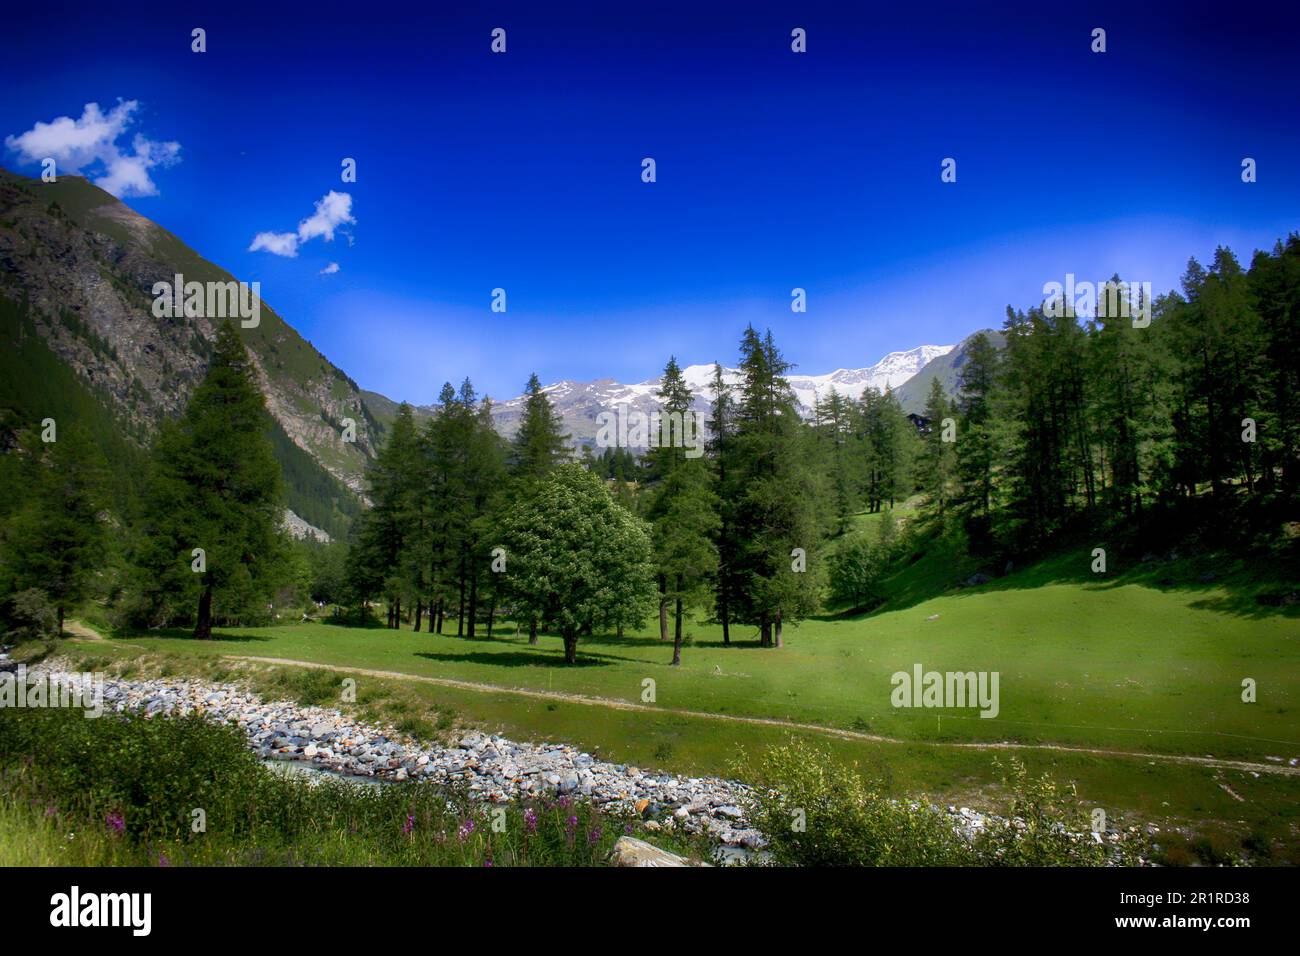 Fiume e sentiero nel paesaggio forestale e montano, Gressoney, Valle d'Aosta, Italia Foto Stock